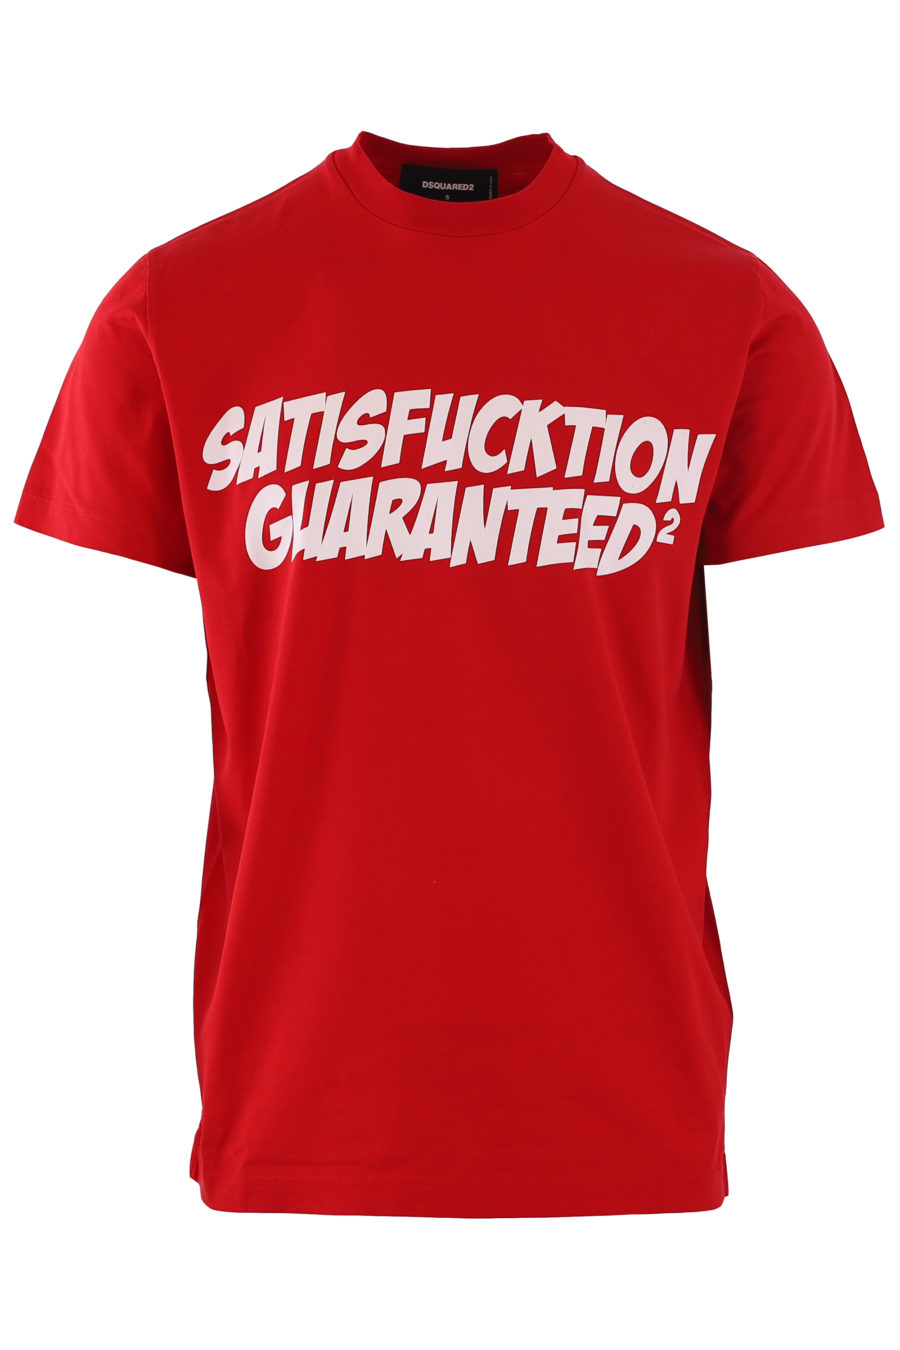 T-shirt rouge "satisfacktion guaranteed2" - IMG 6815